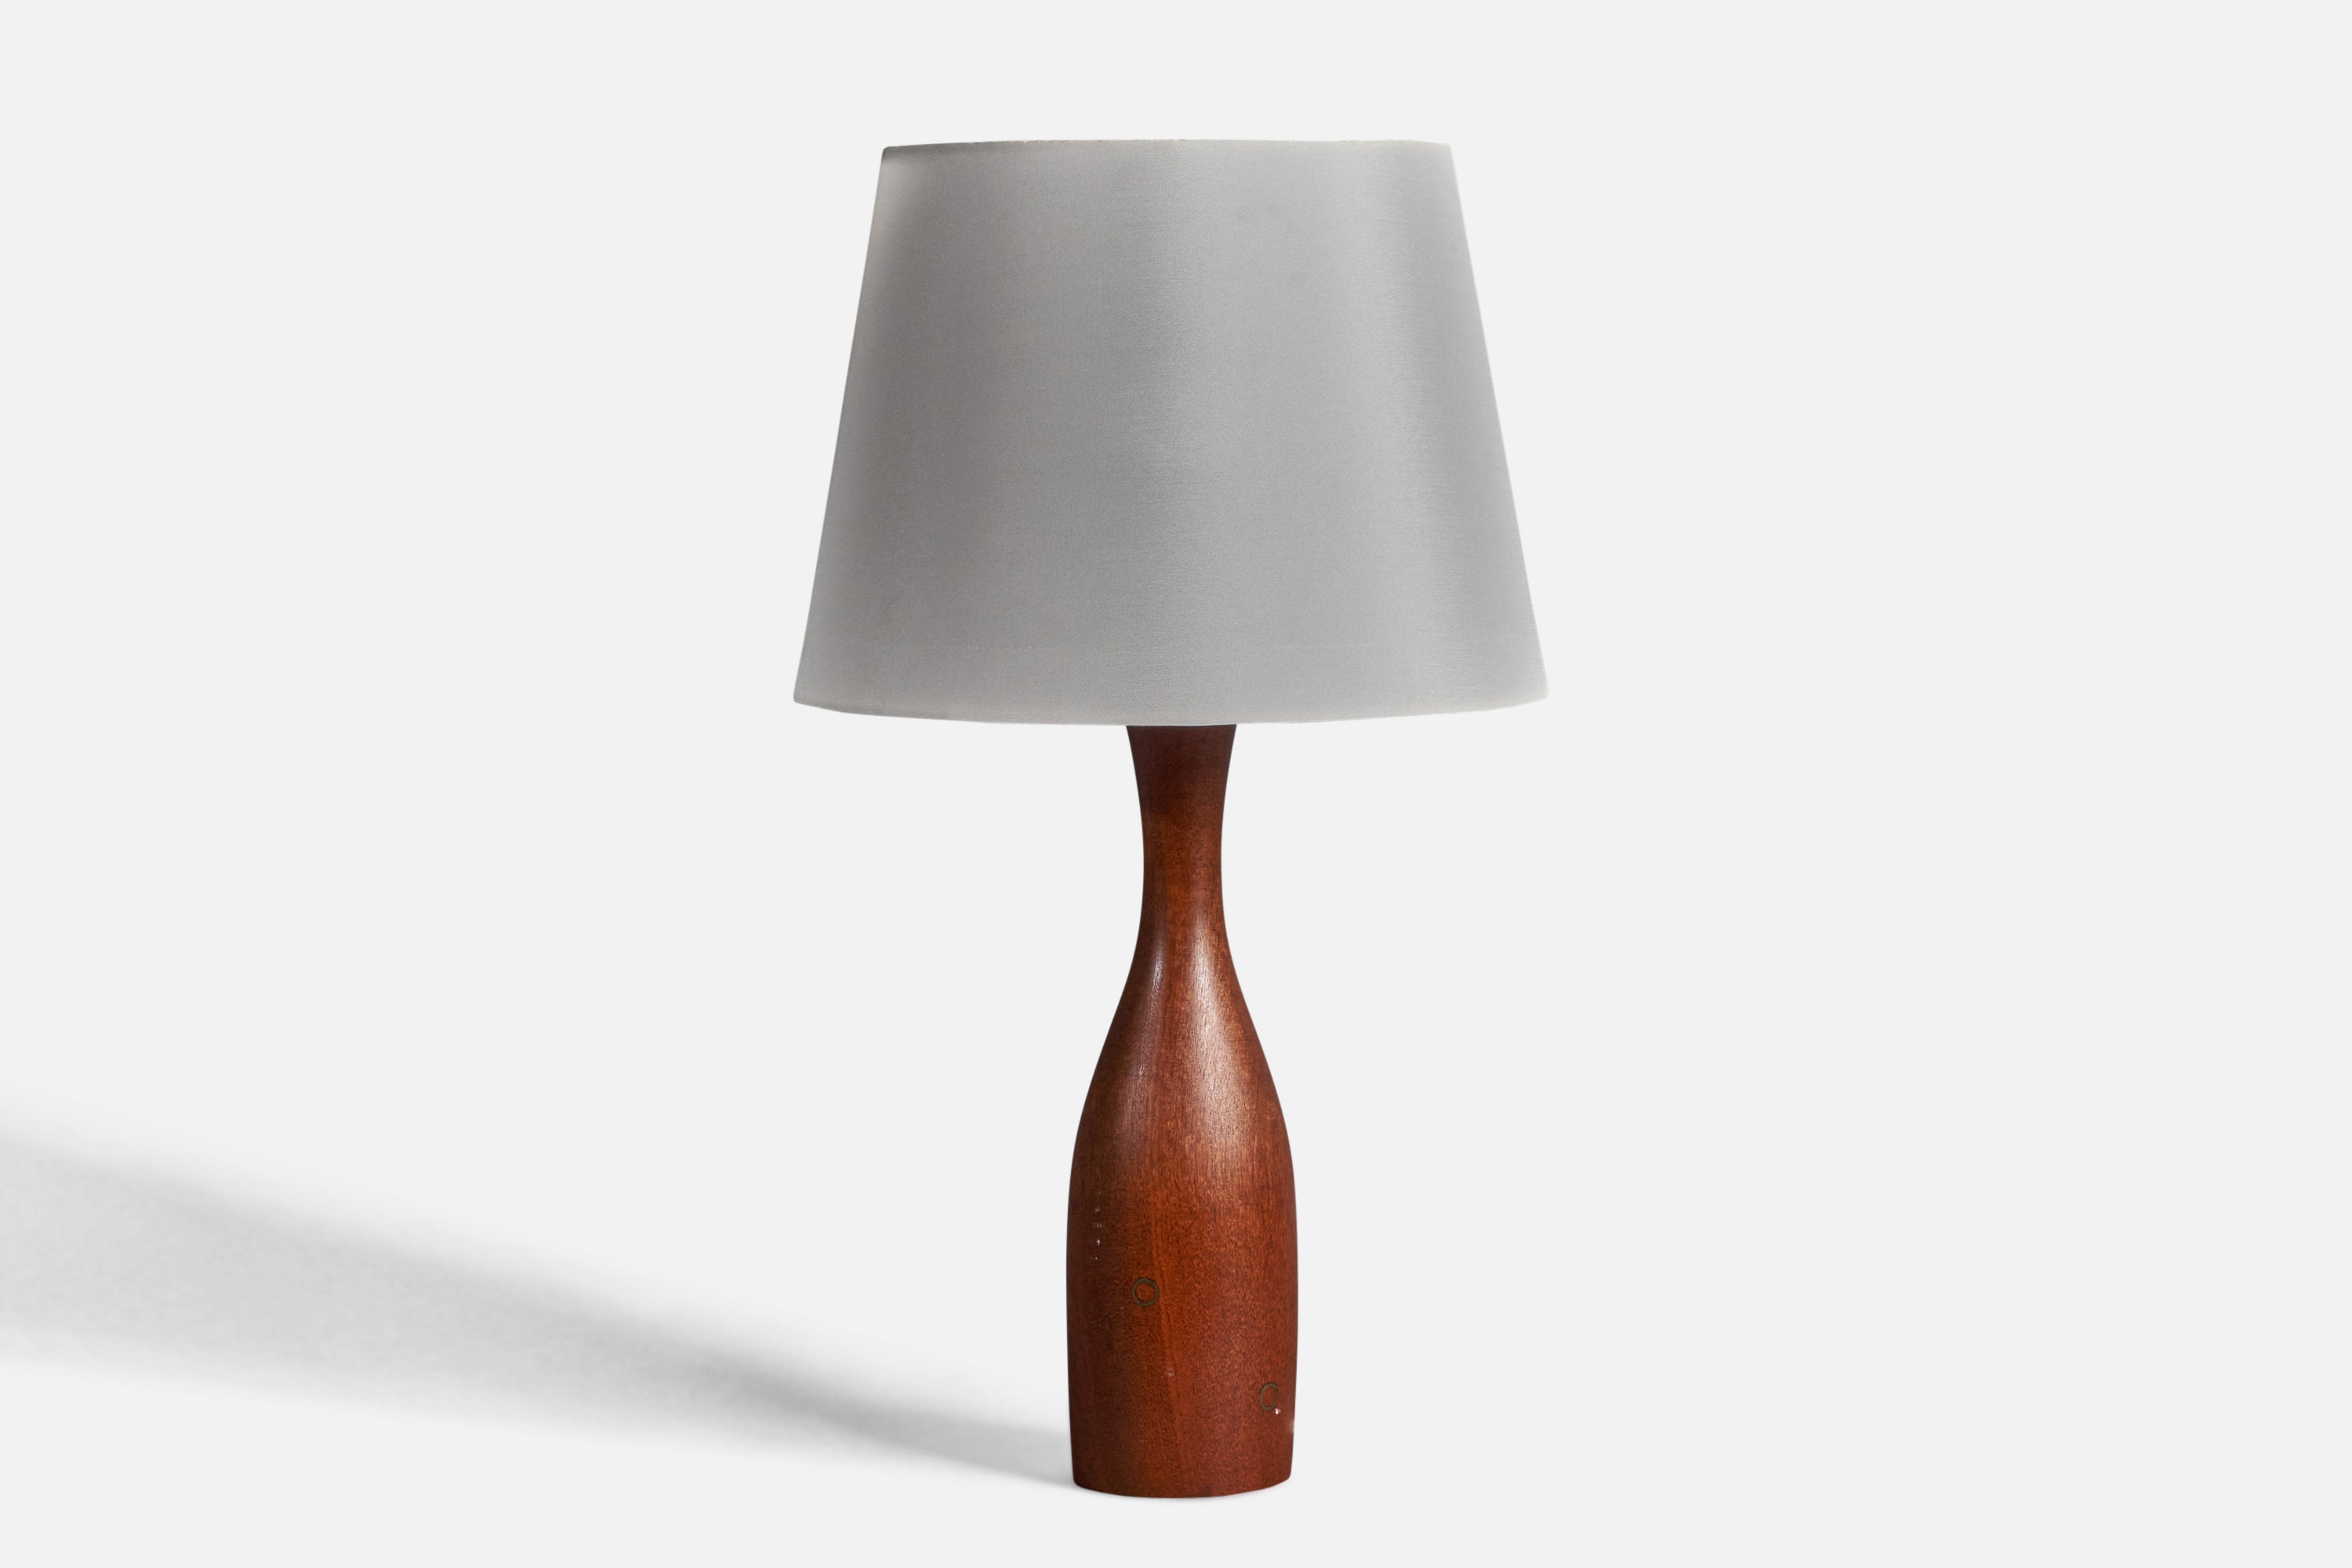 Danish Modernist Designer, Organic Table Lamp, Teak, Brass Inlays, Denmark 1950s For Sale